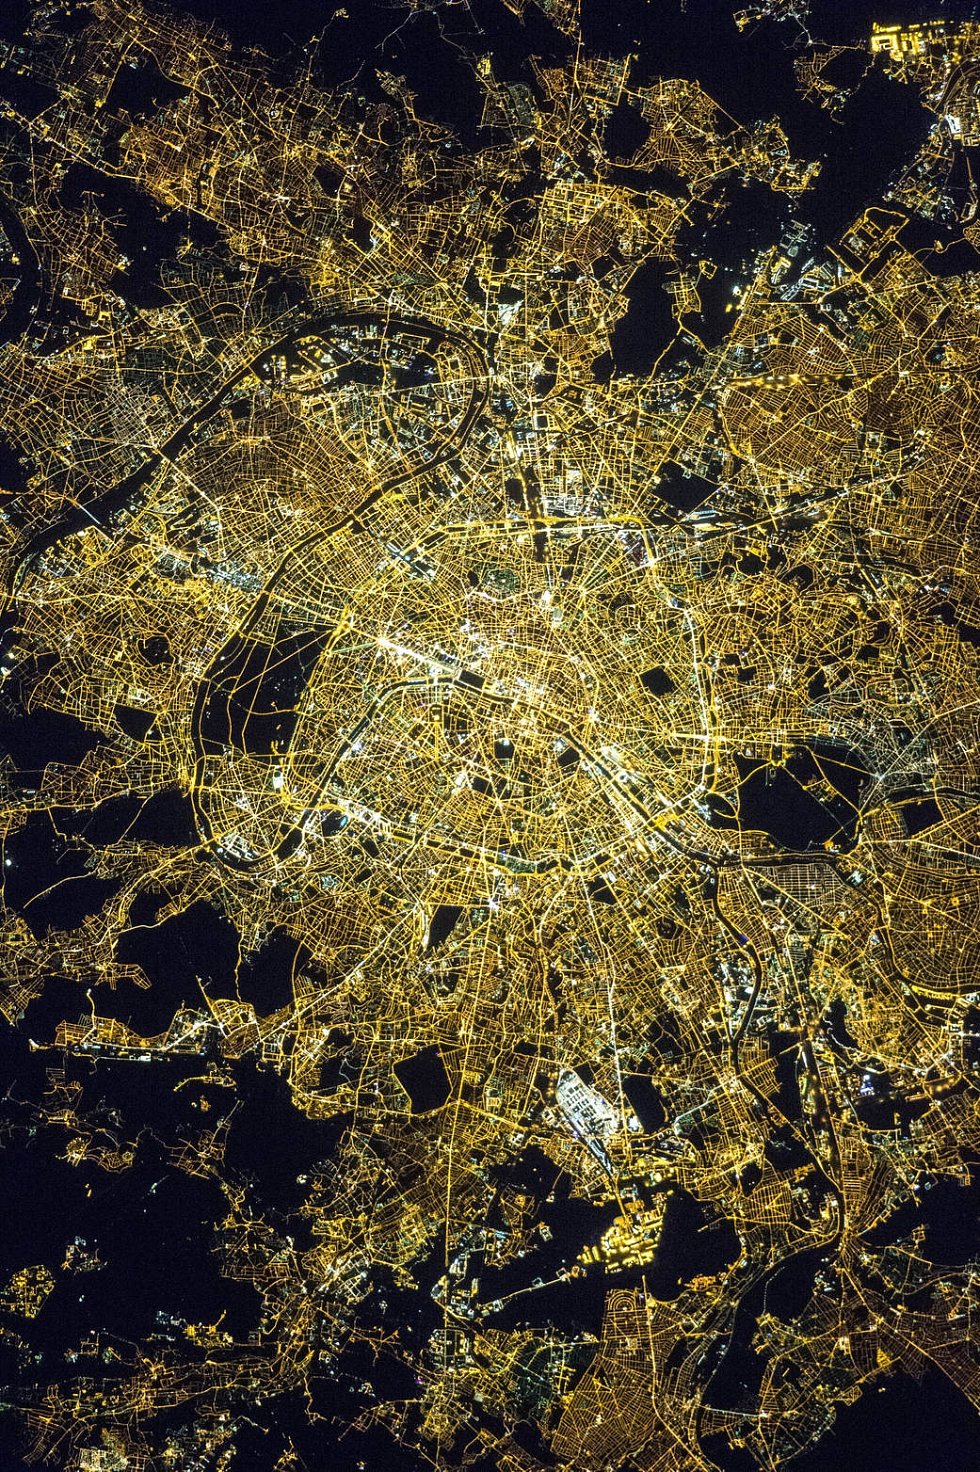 Půlnoční Paříž dává vyniknout osvětleným ulicím a především bulváru Champs-Élysées, historické ose města pocházející ze 17. století. 